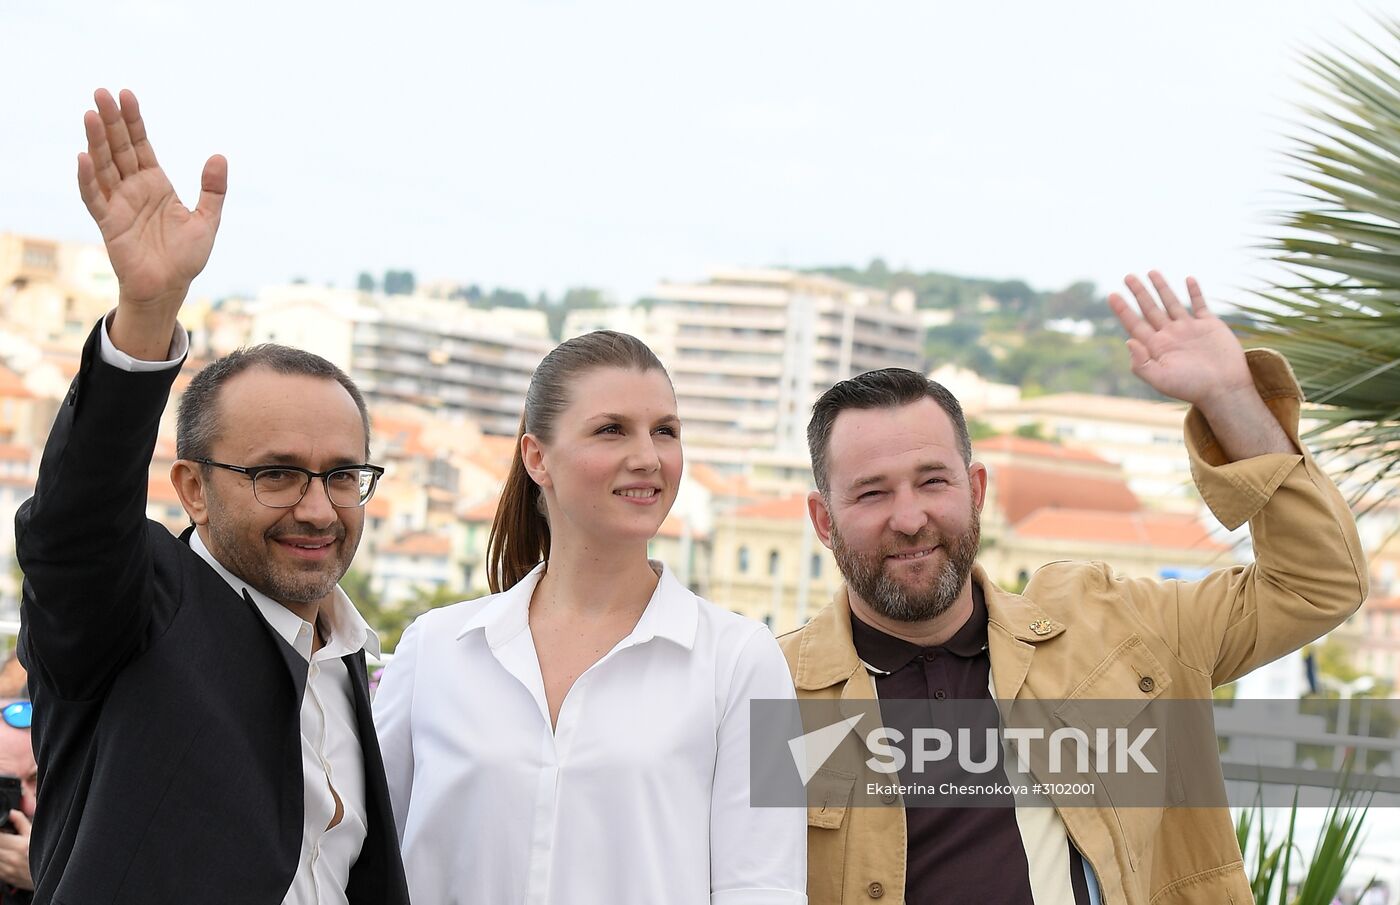 Photo opp for of Andrei Zvyagintsev's Loveless at Cannes Film Festival